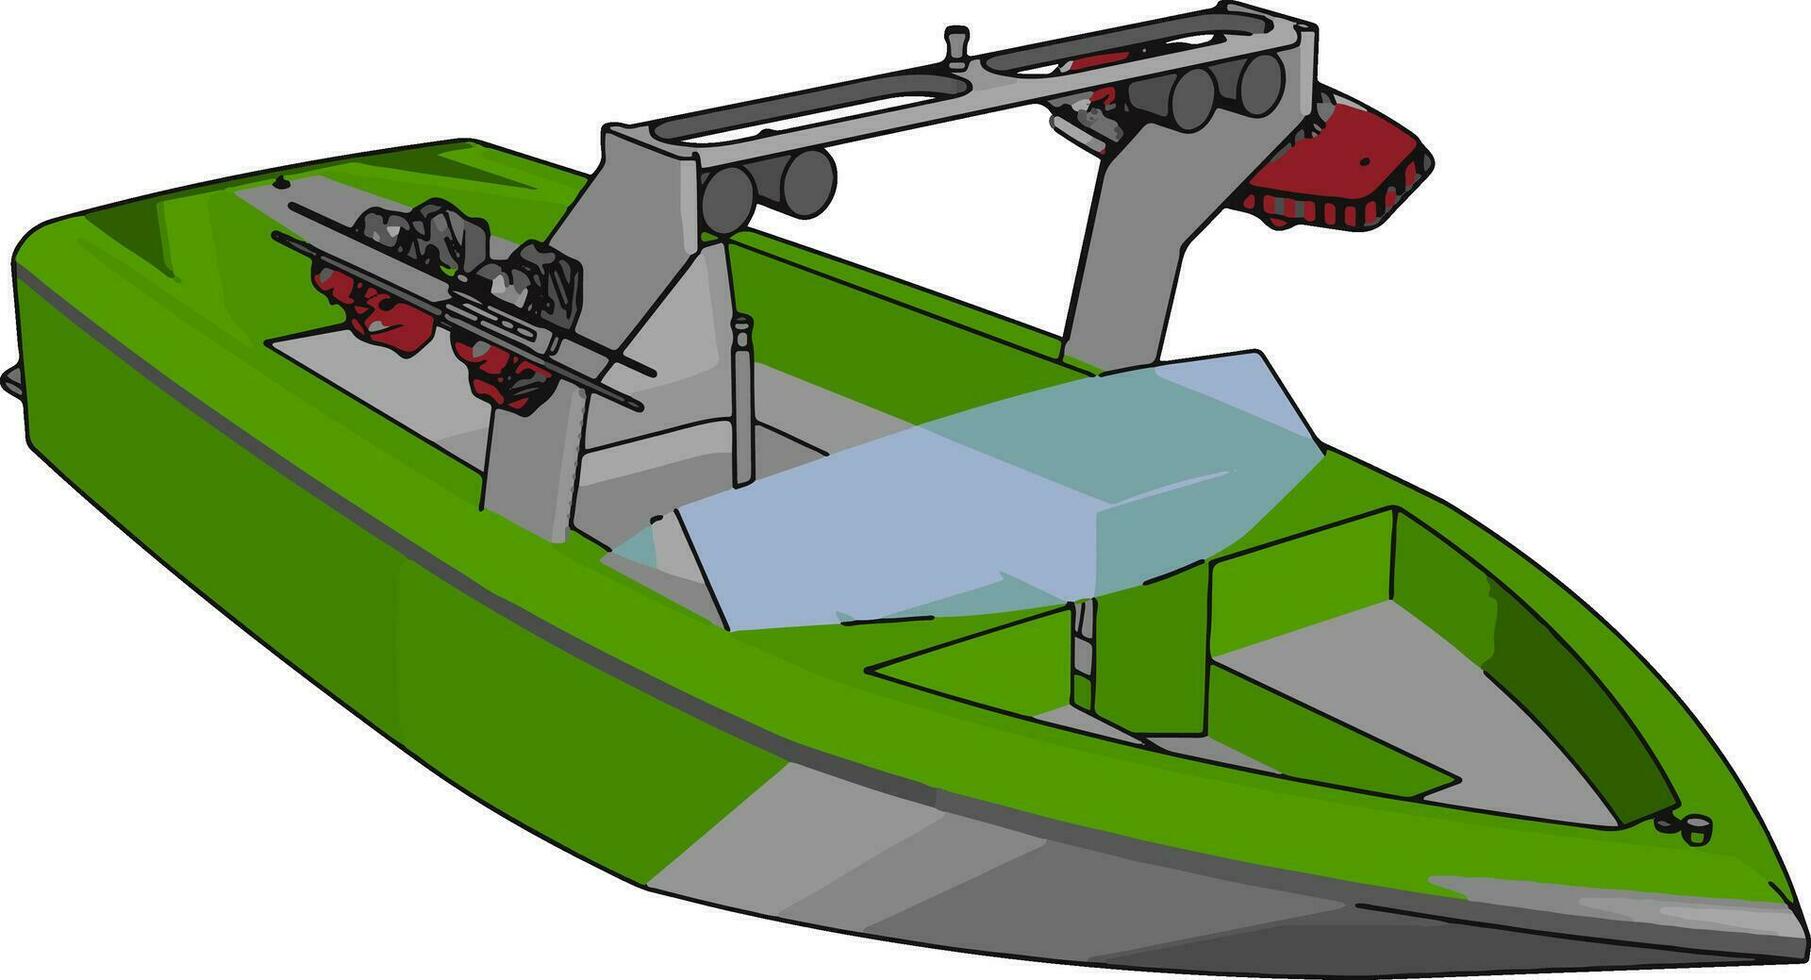 modell av hastighet båt, illustration, vektor på vit bakgrund.